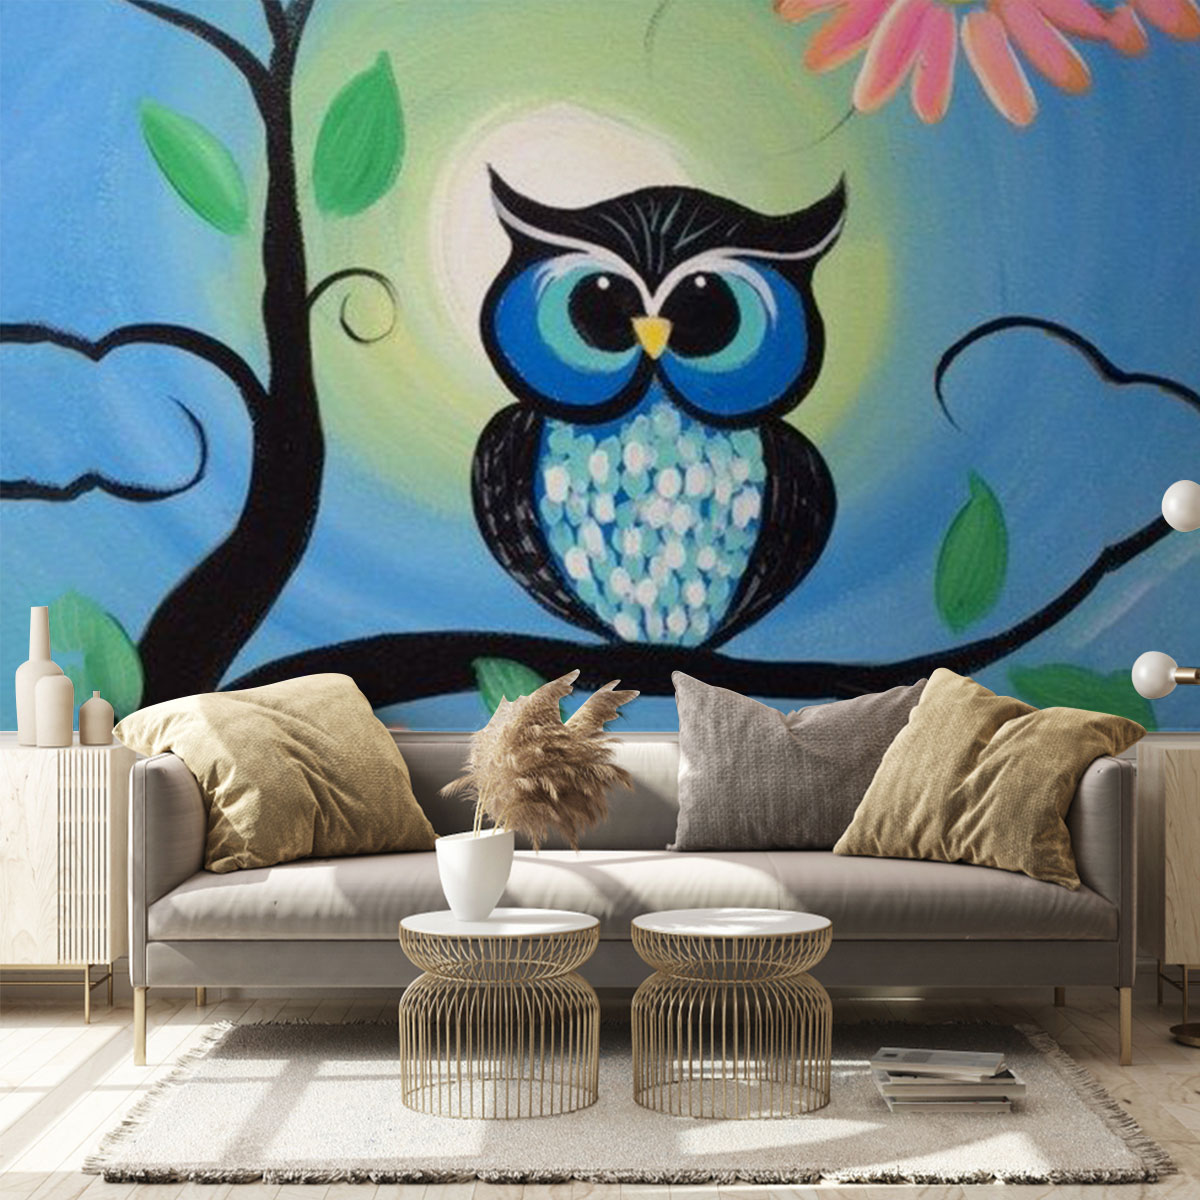 Cute Owl Wall Mural_1_2.1